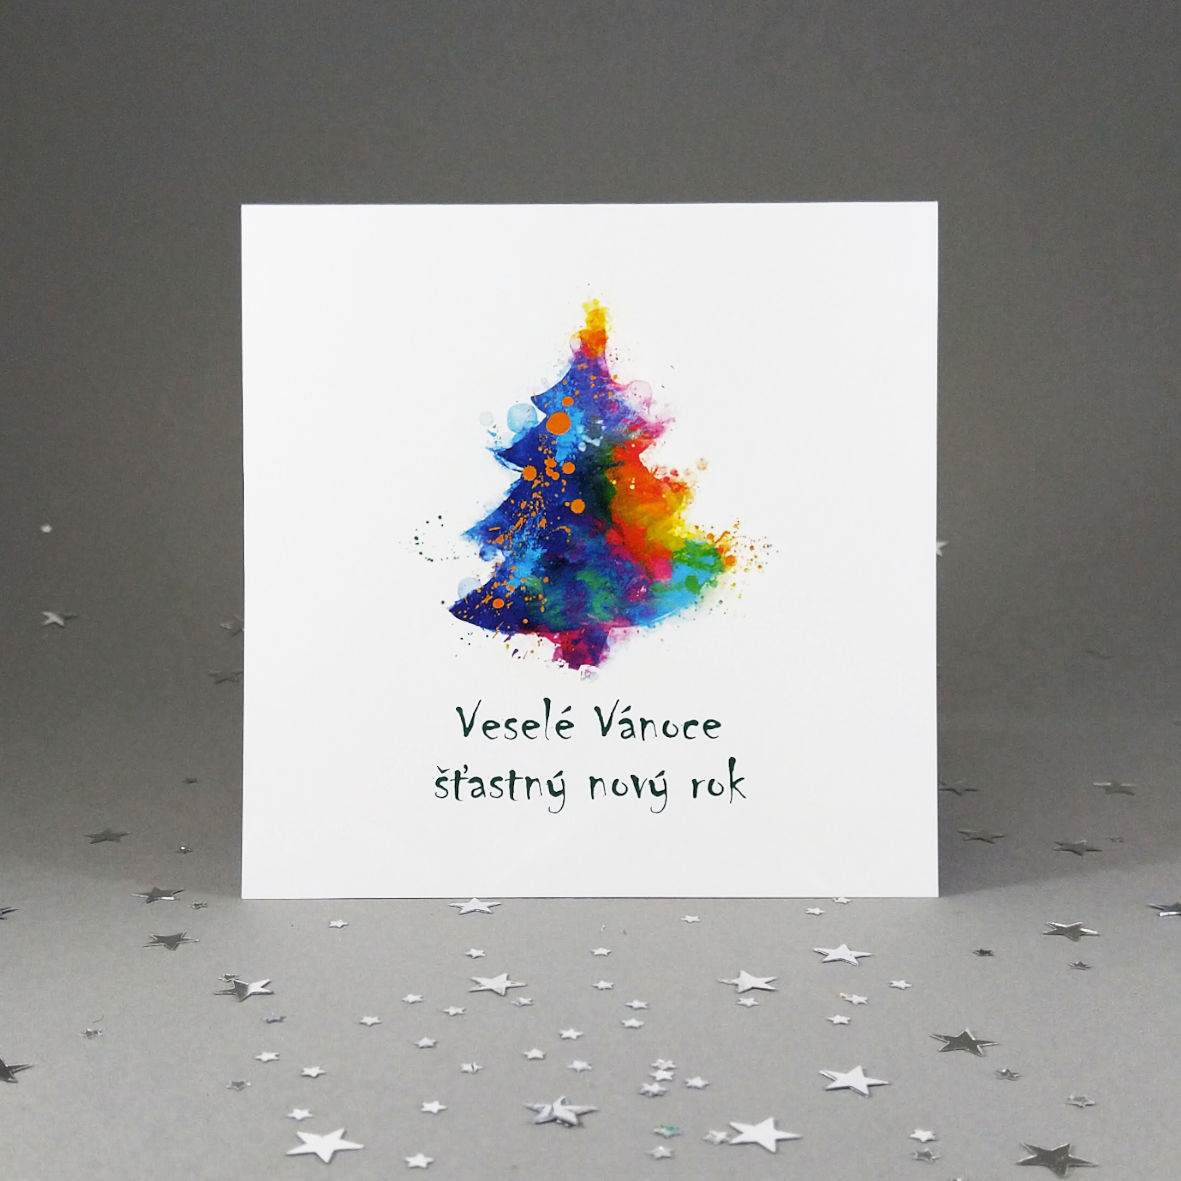 Novoroční-vánoční přání s motivem barevného vánočního stromku. Otevírací, čtvercový formát 140 × 140 mm, digitální tisk, jasně bílý hlazený papír.